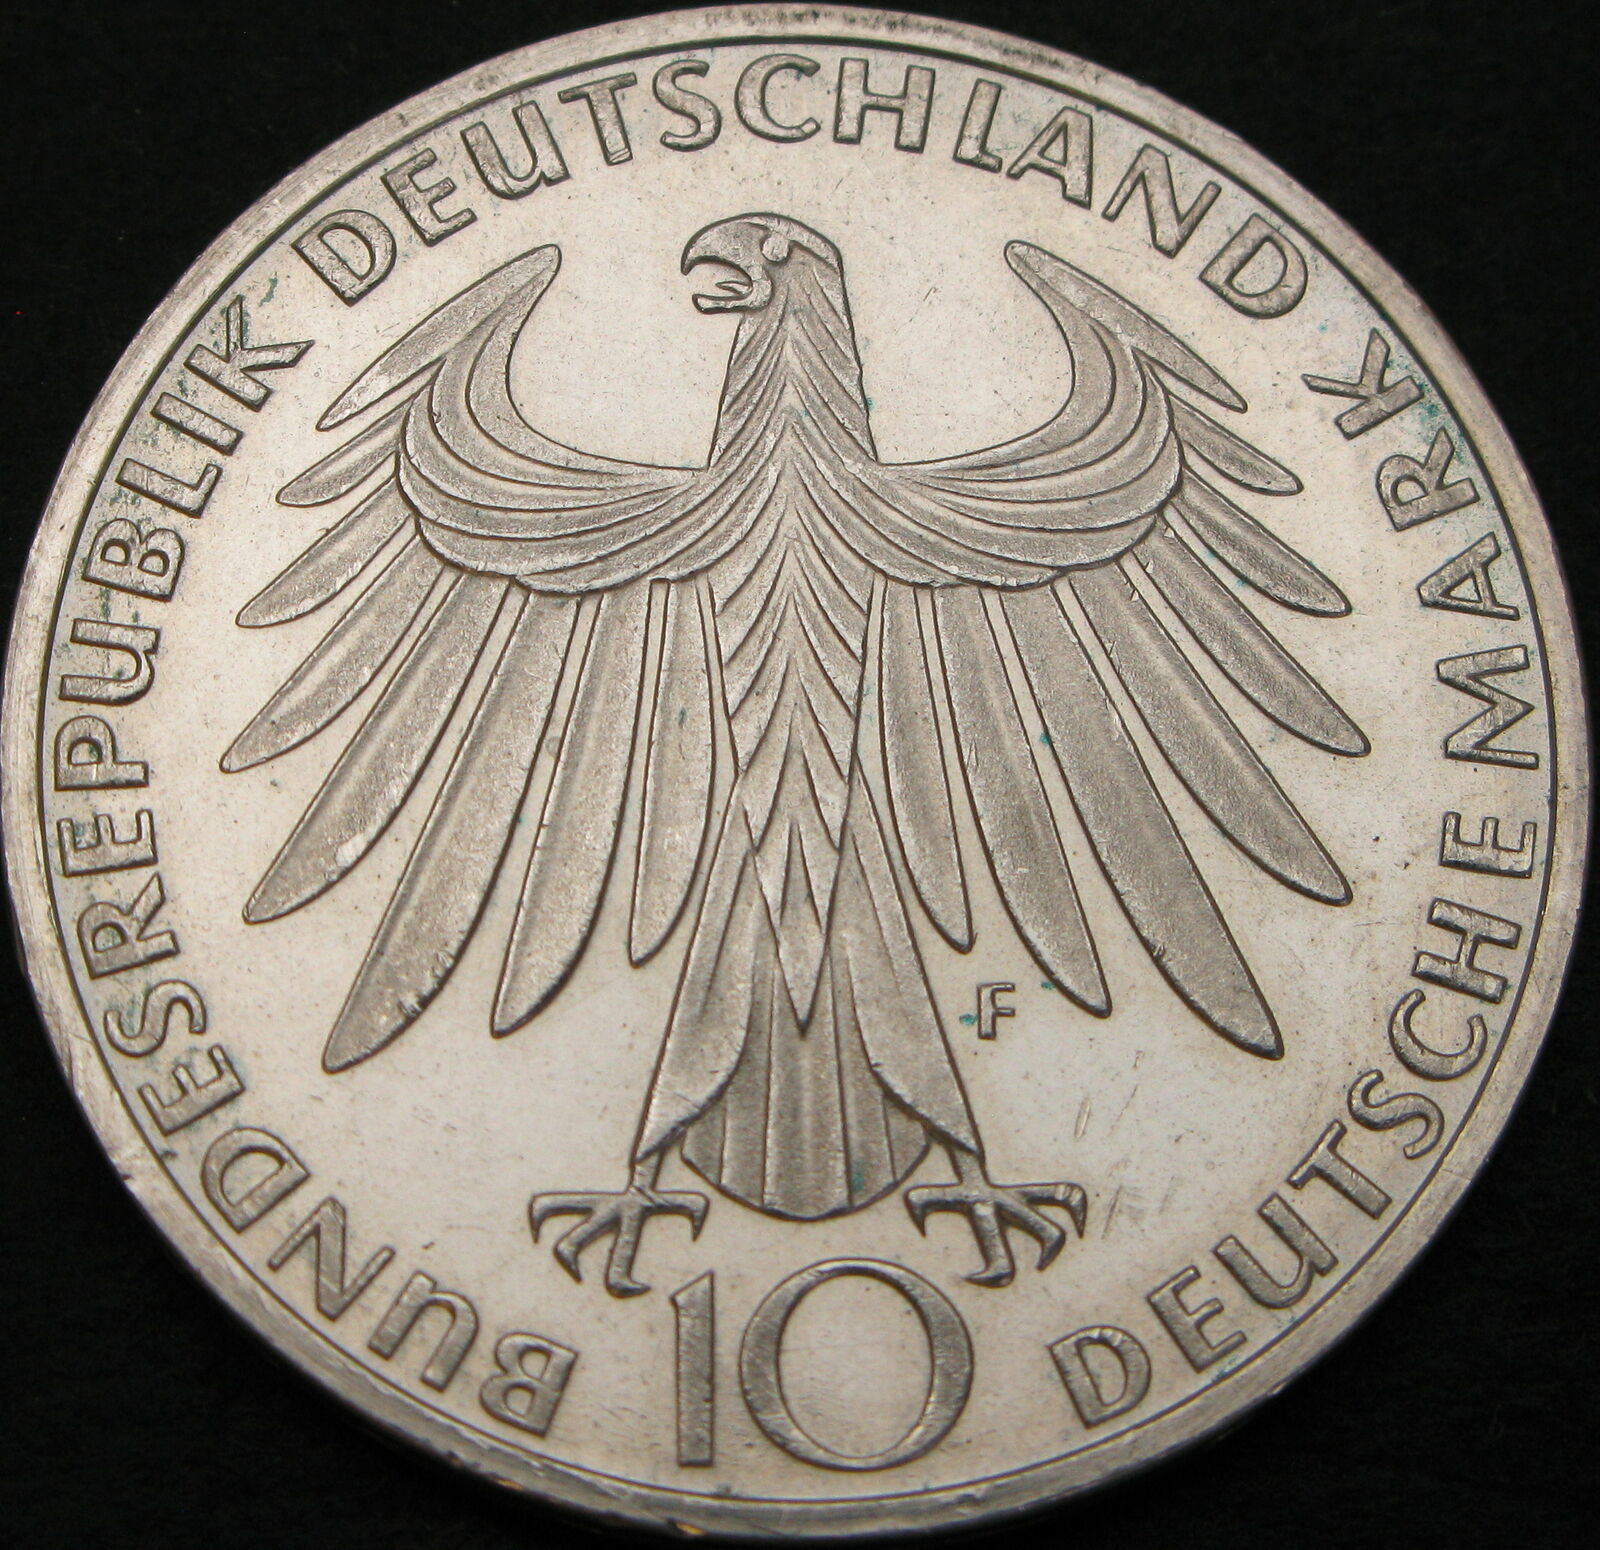 Germany 10 Mark 1972f - Silver - Olympic Games Munich - Aunc - 3939 ¤